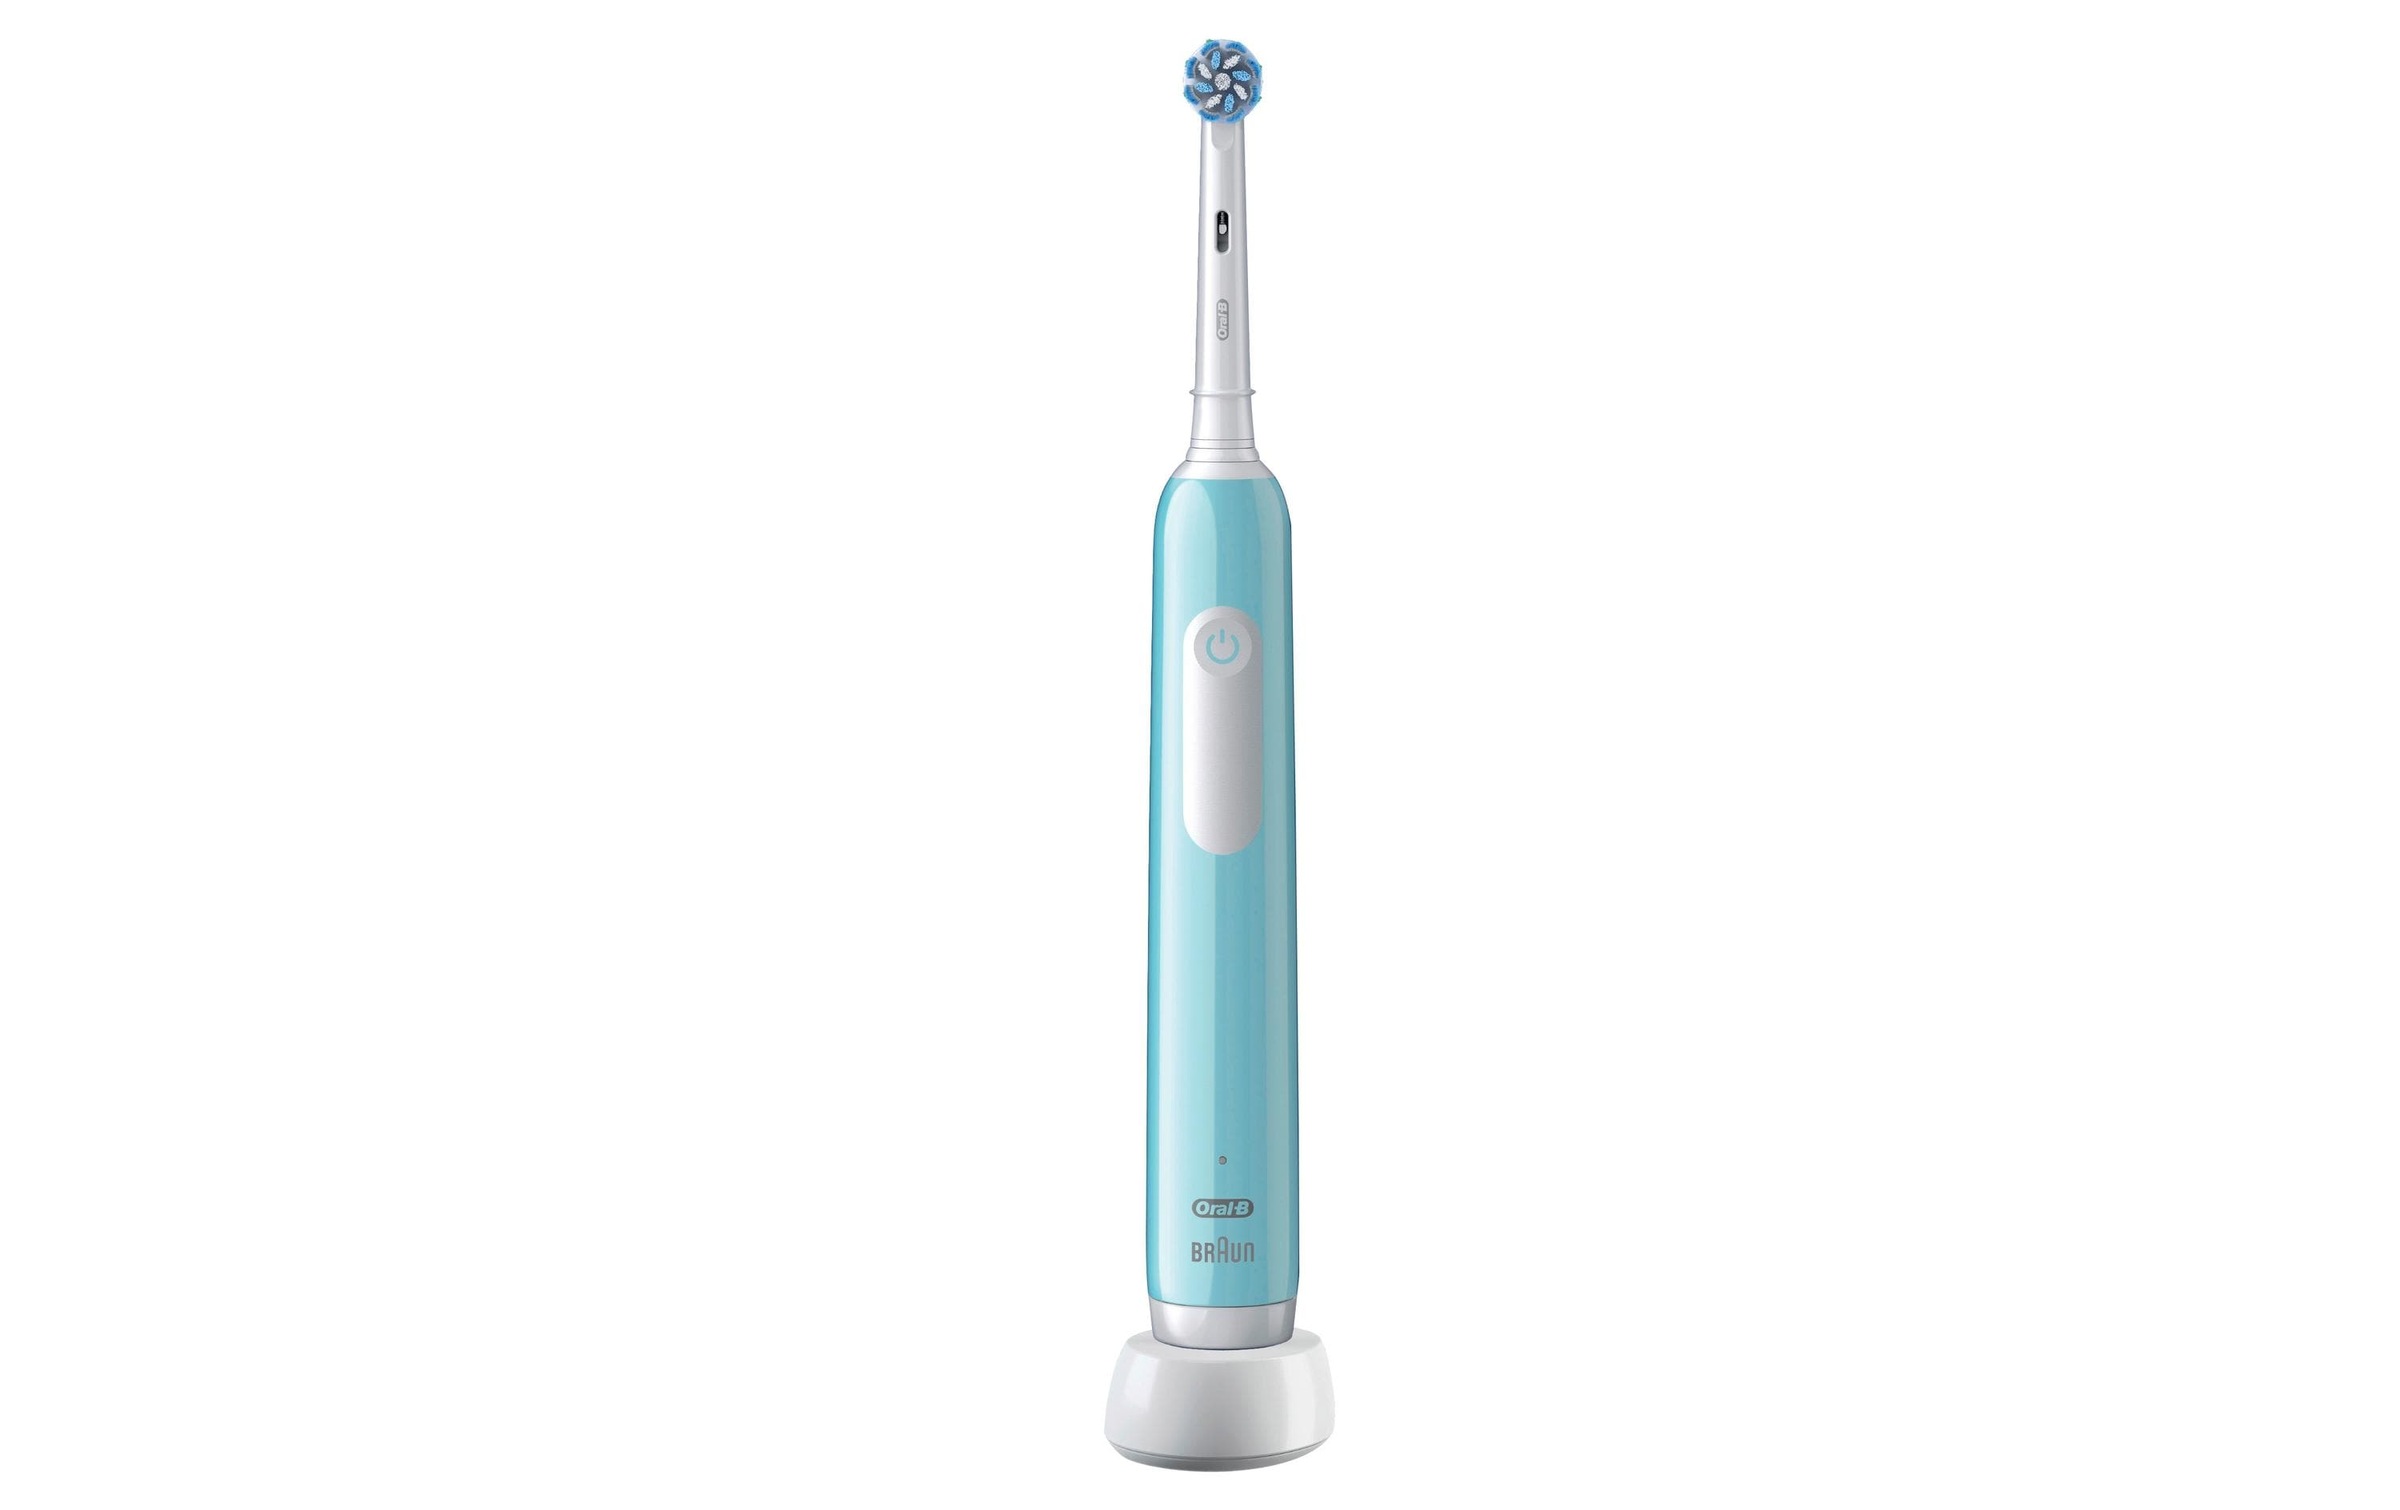 Oral-B Elektrische Zahnbürste »Pro 1 Se«